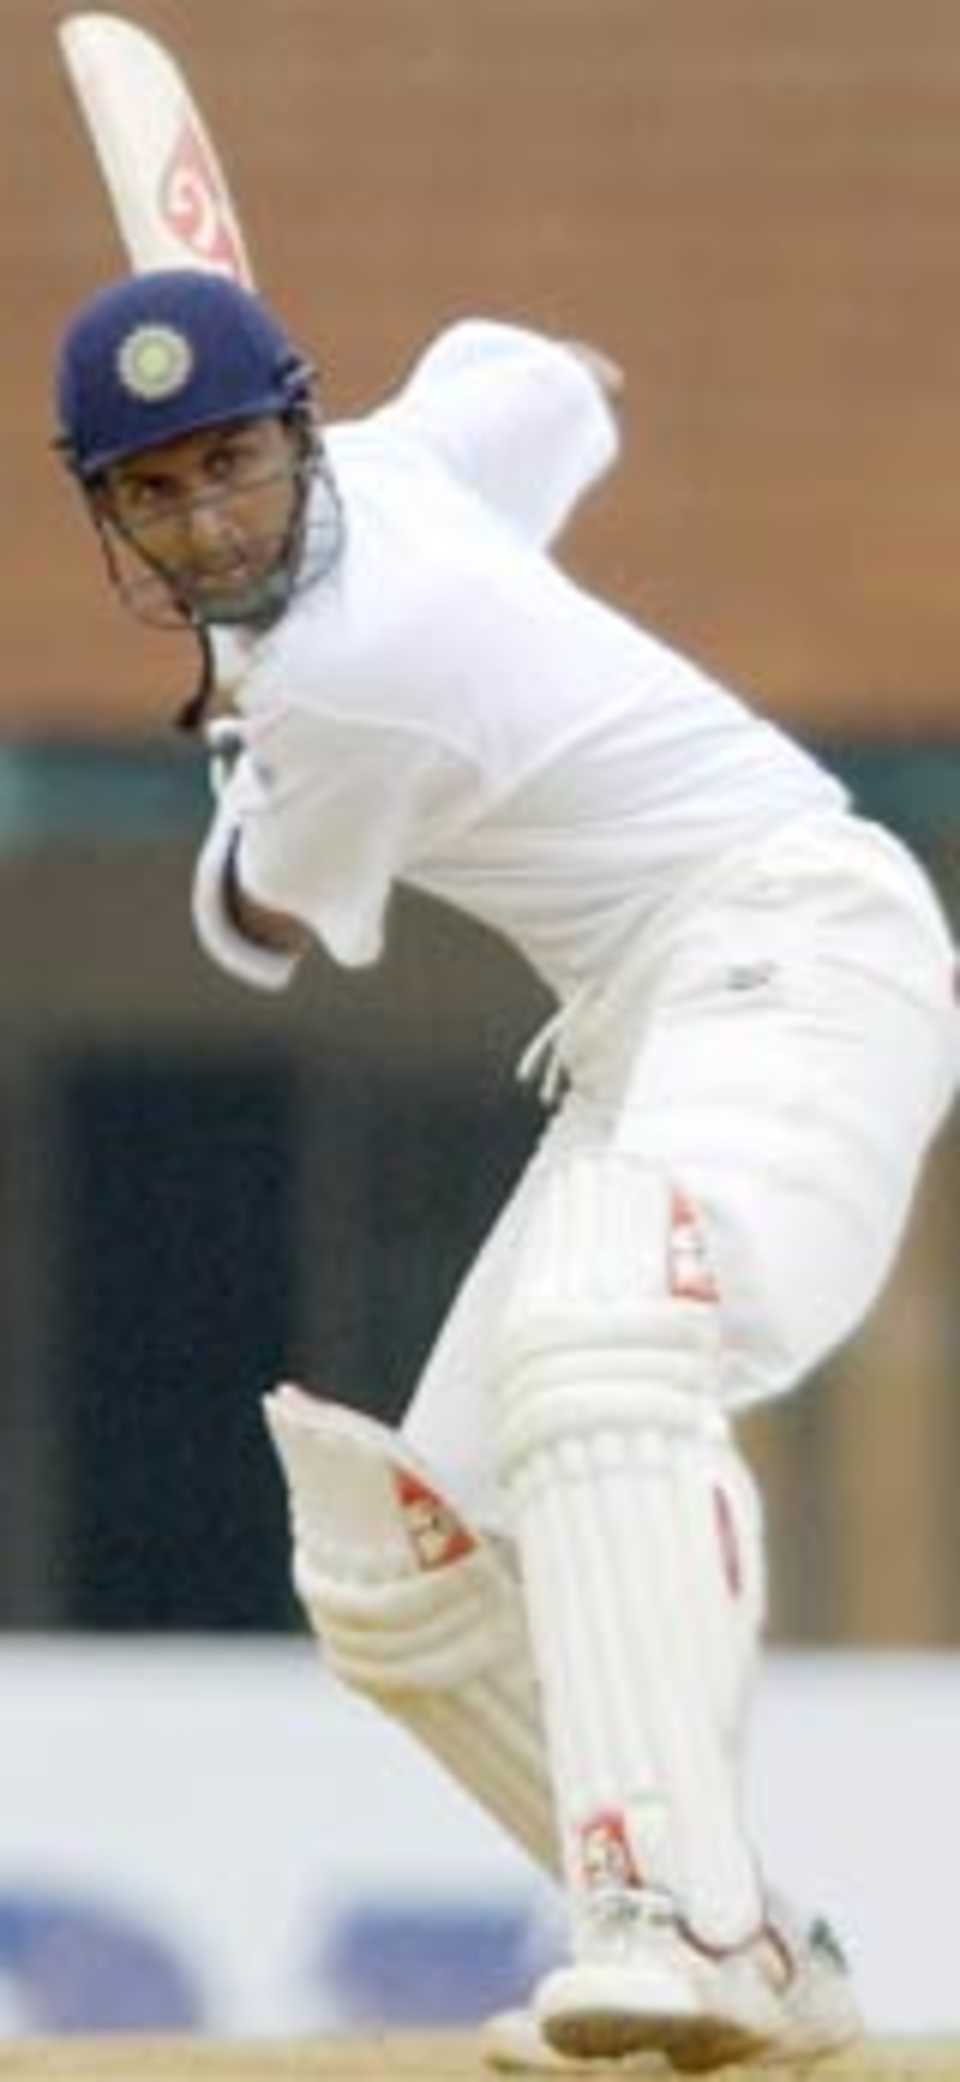 Indian cricketer Sanjay Bangar prepares to play a shot